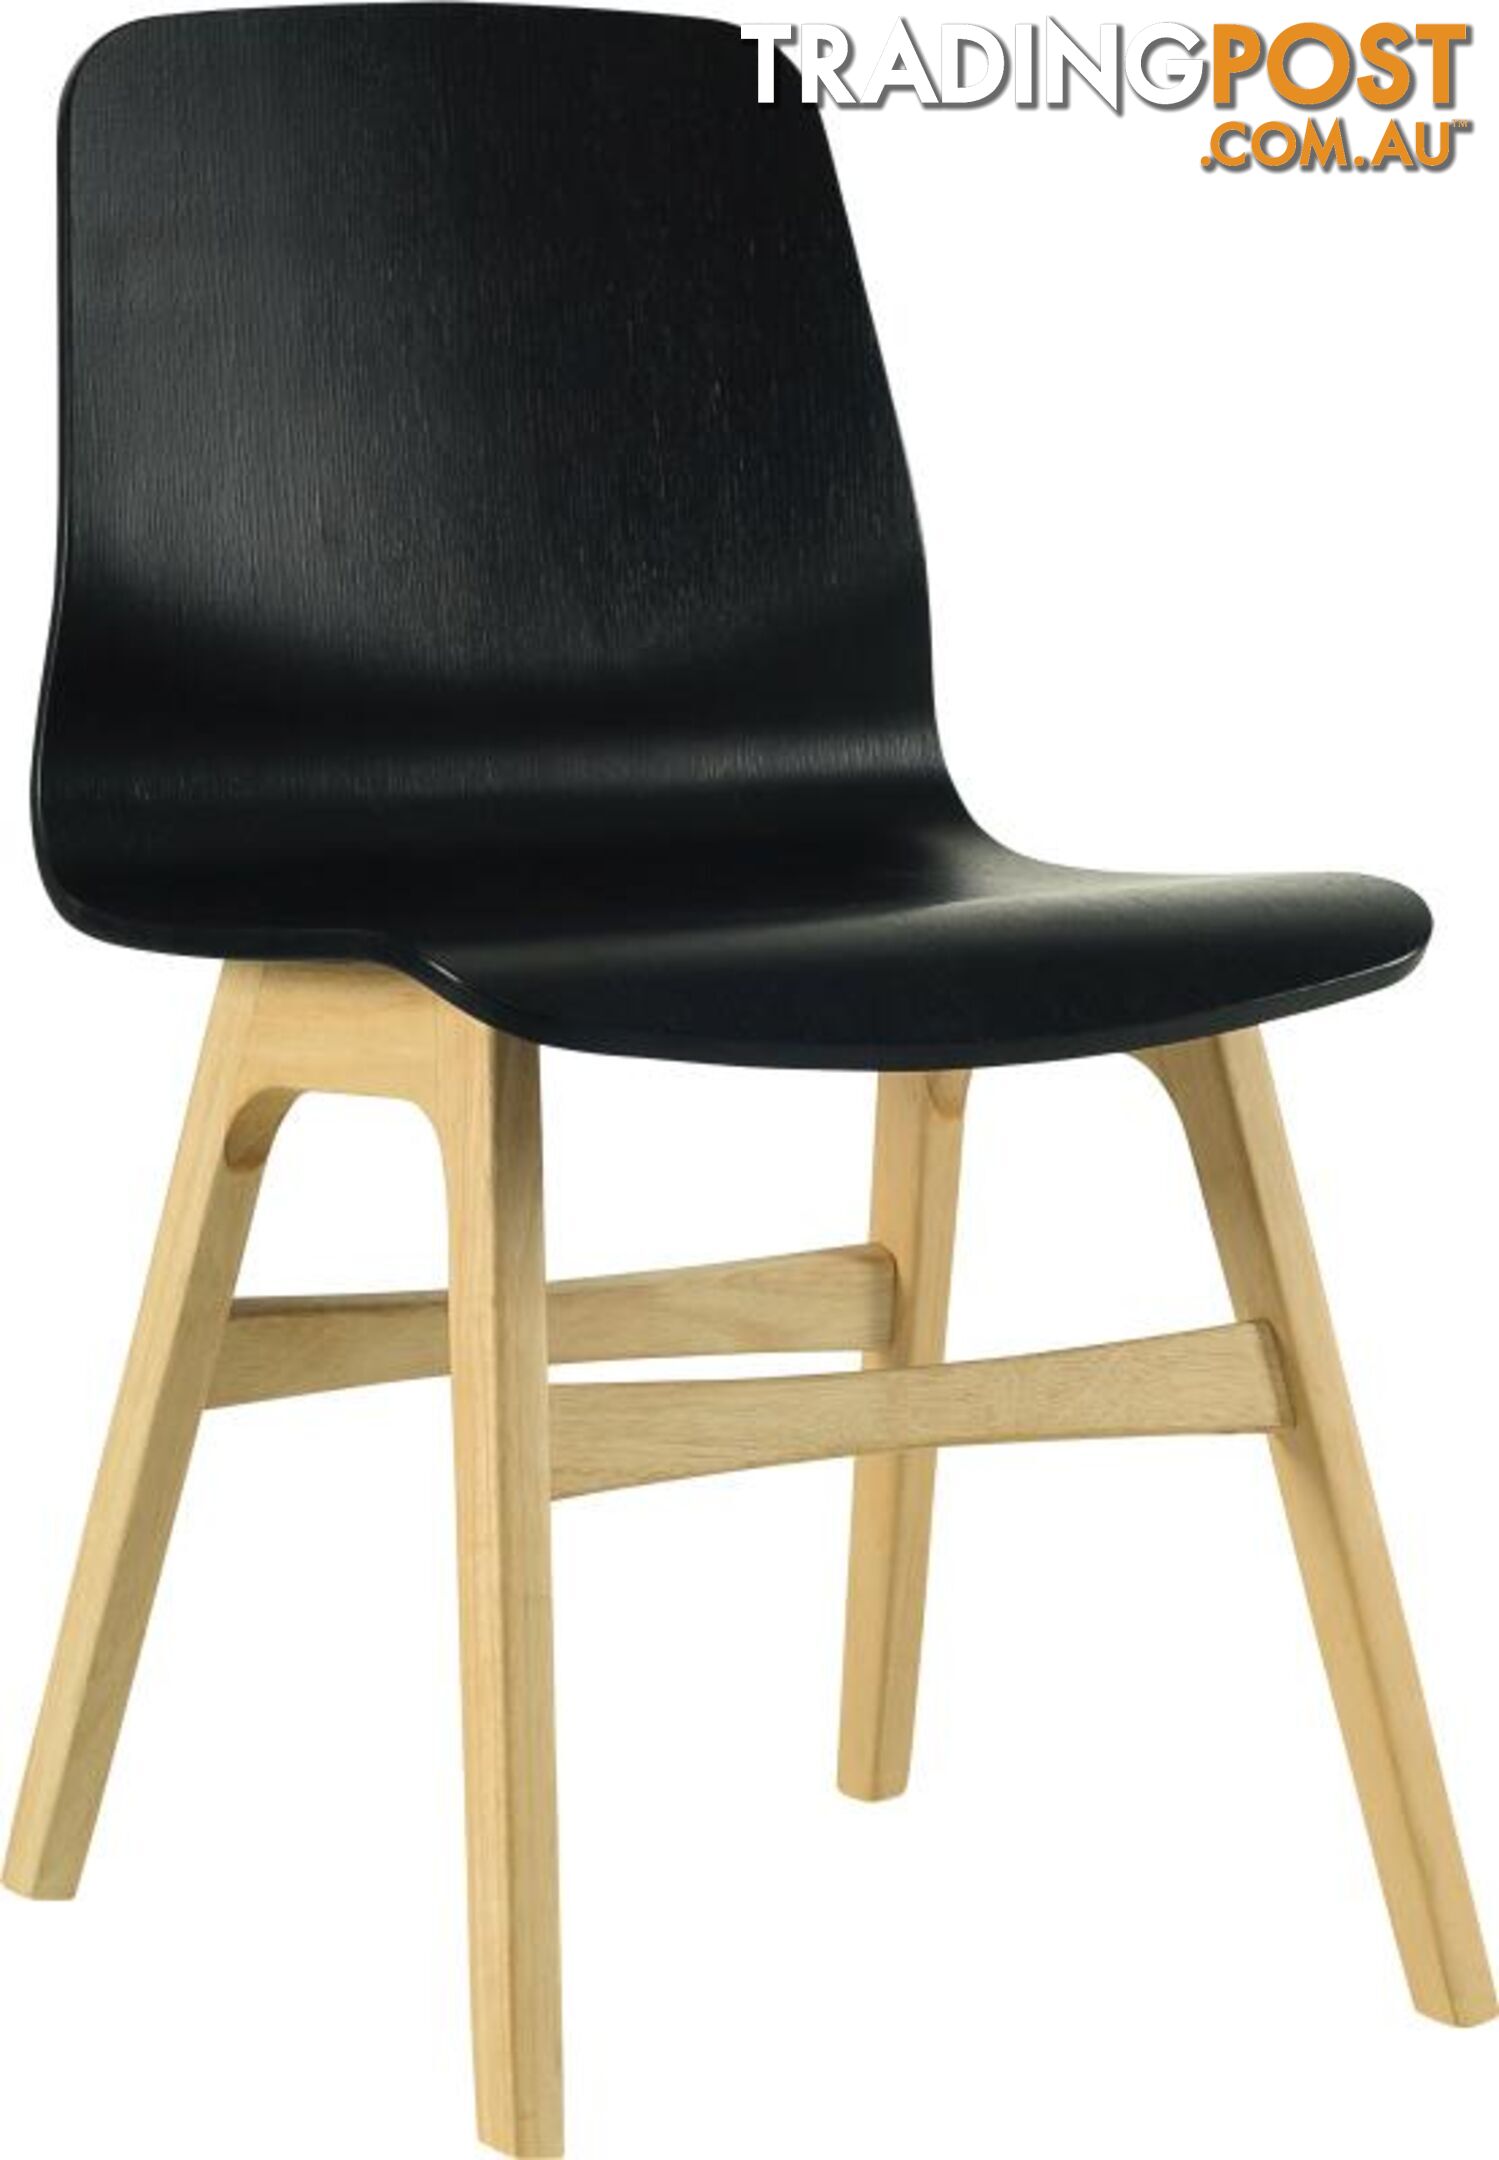 ALYSSA Dining Chair - Black - ALYSSA_DC112-125 - 9334719000848